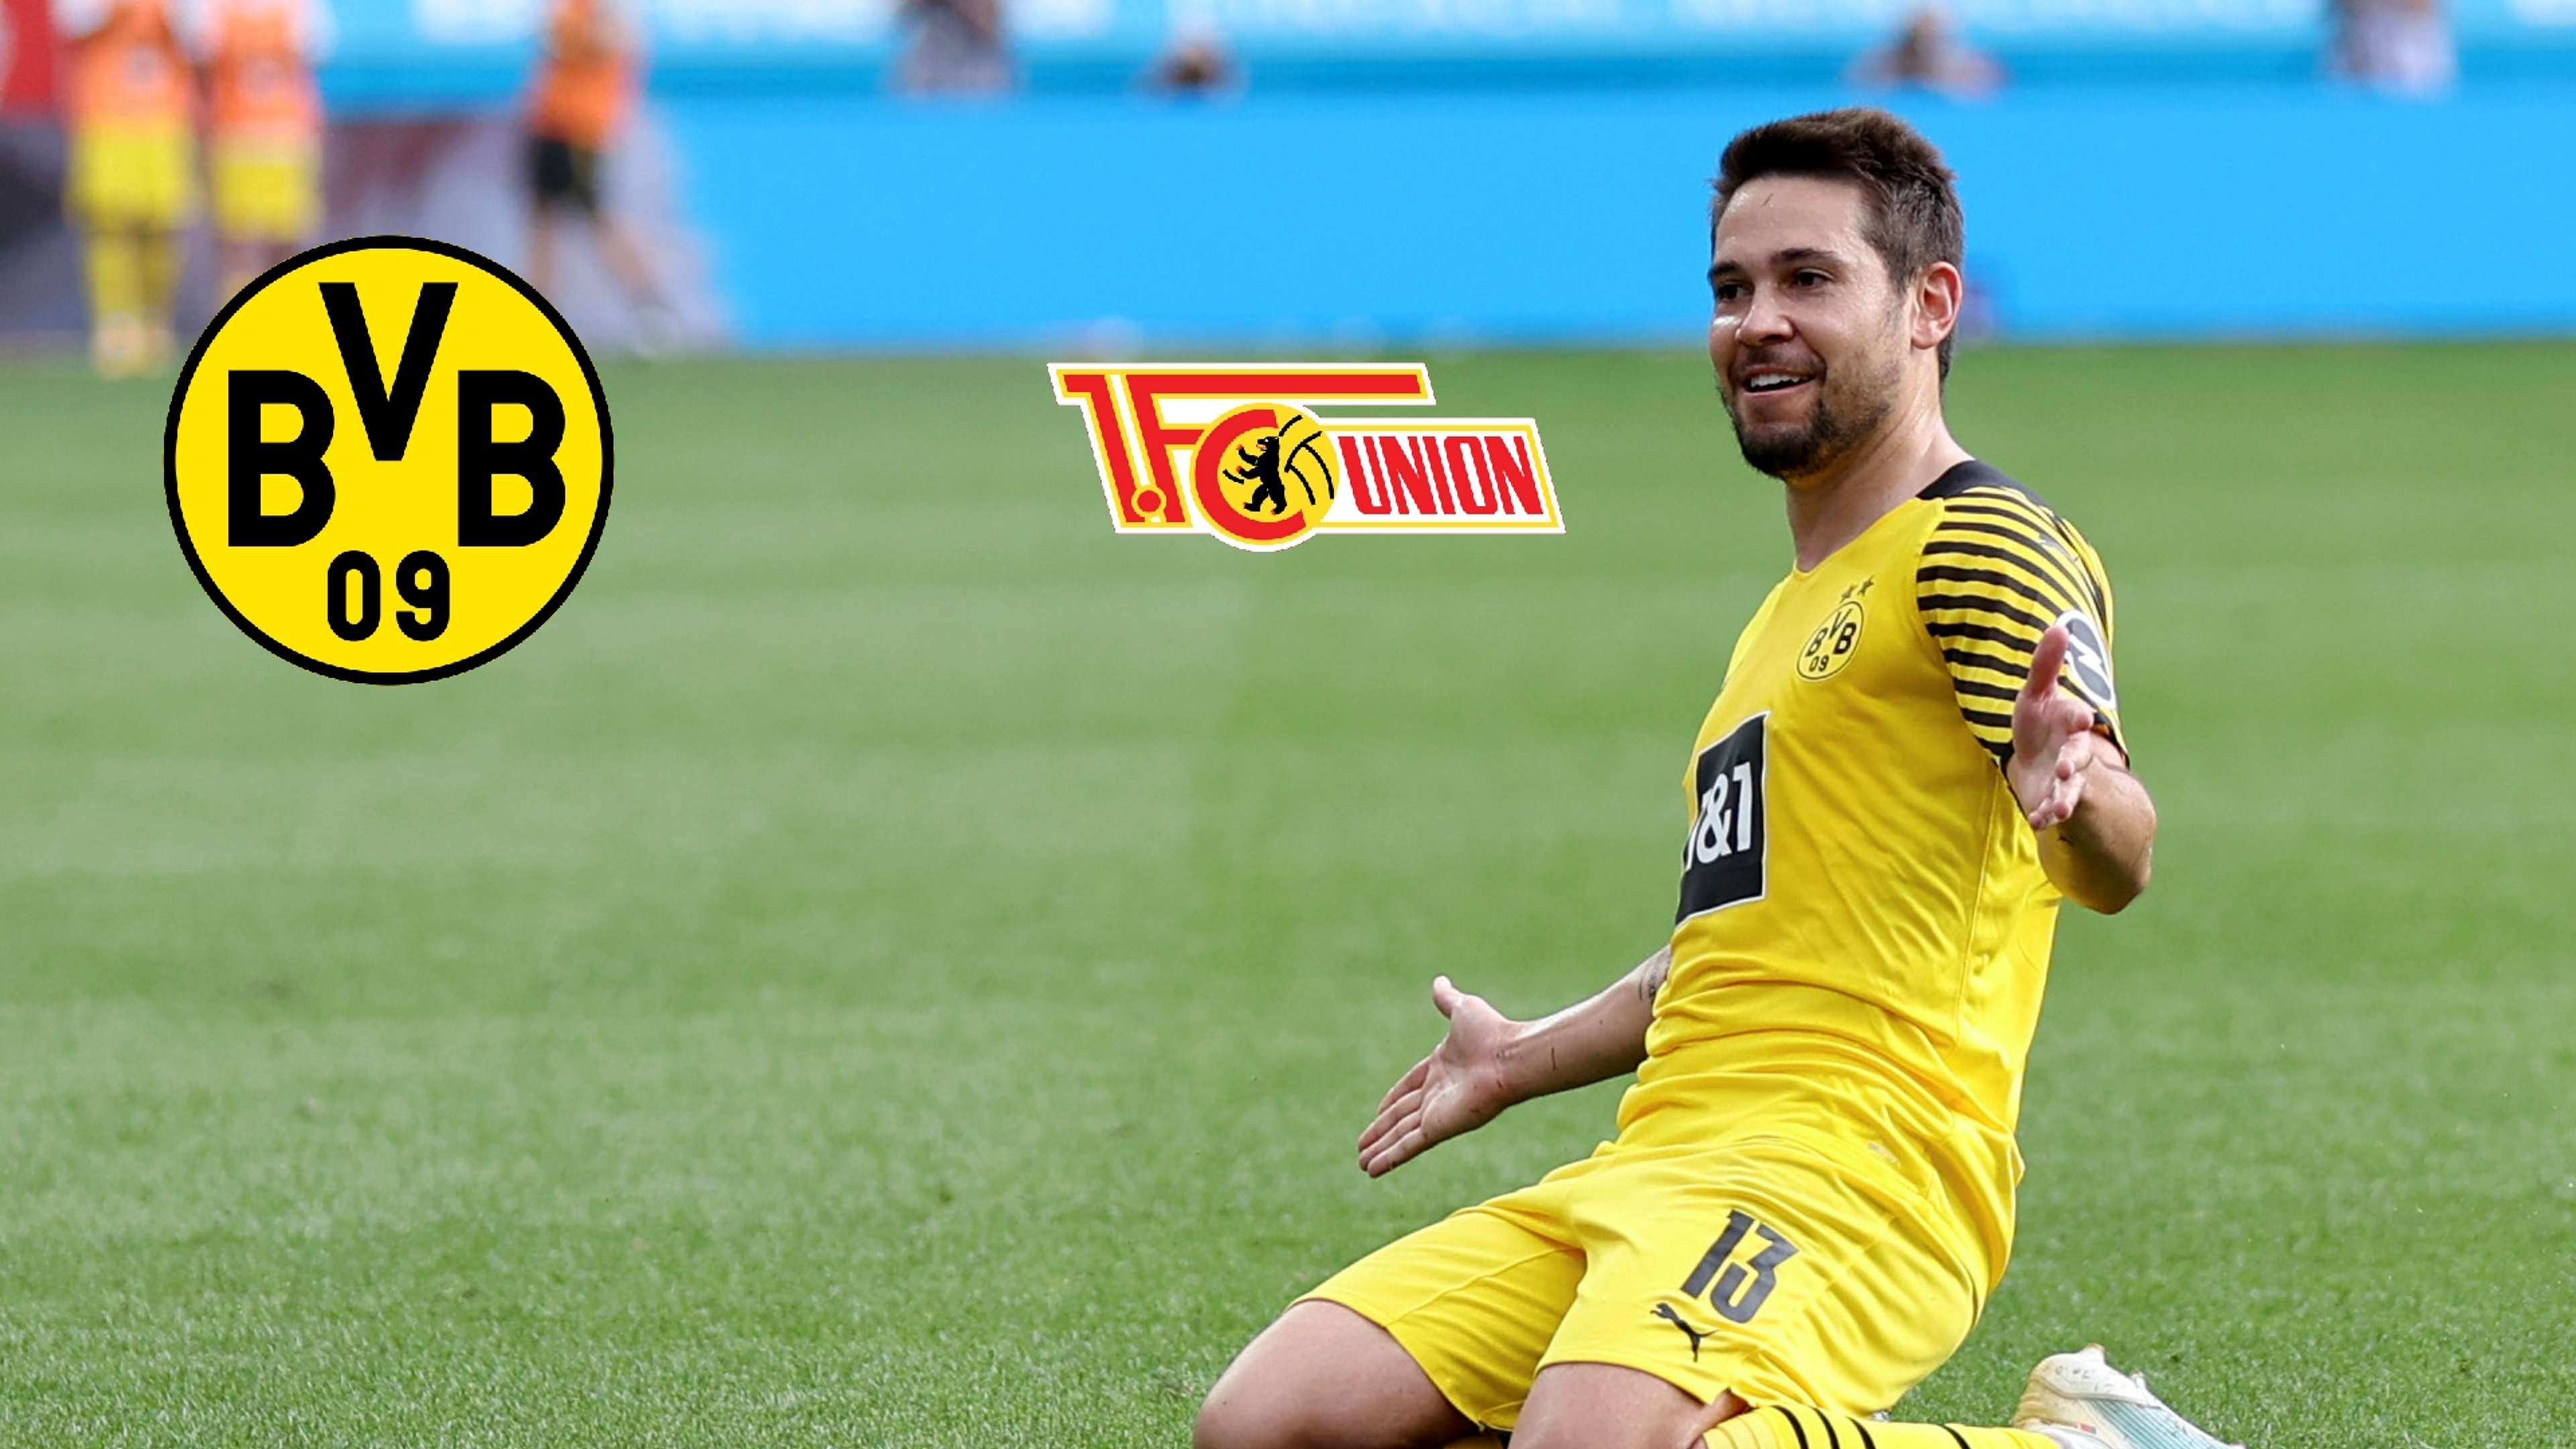 Guerreiro Borussia Dortmund Union Logos